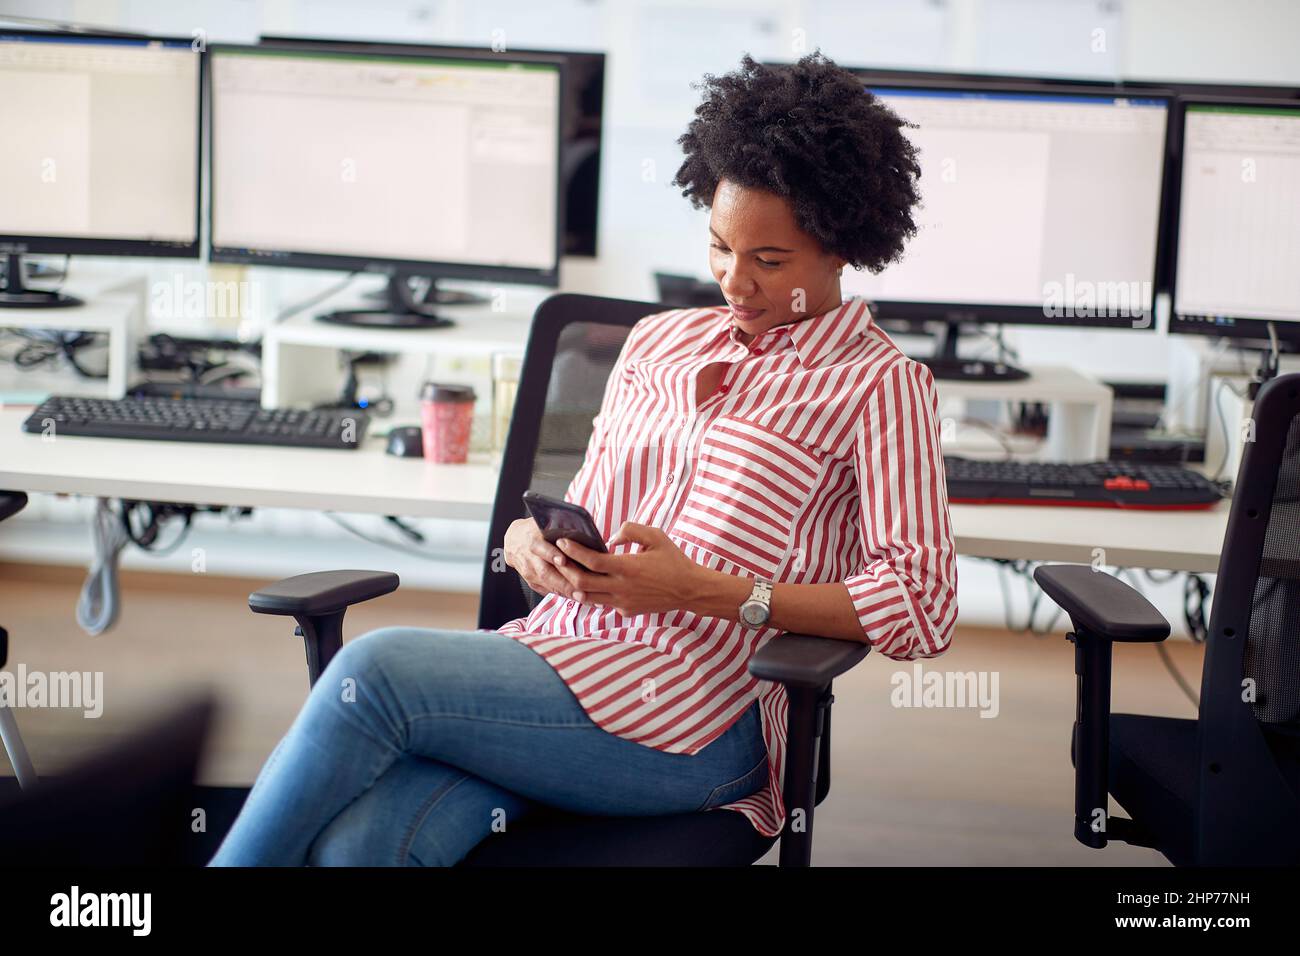 Une jeune femme s'asseyant au bureau dans une atmosphère agréable au bureau et envoyant des SMS sur le smartphone. Employés, travail, bureau Banque D'Images